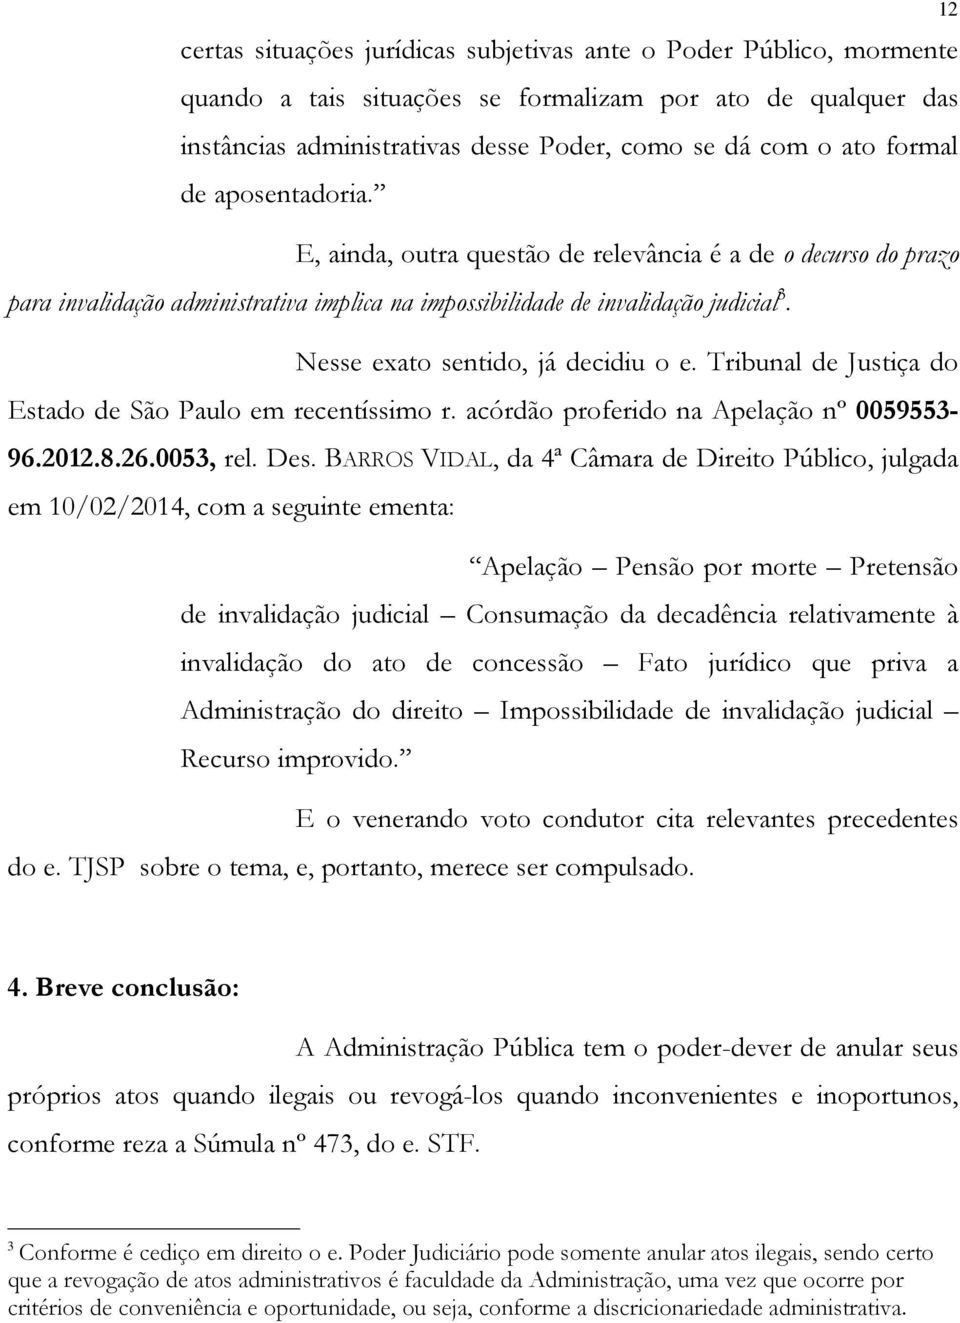 Nesse exato sentido, já decidiu o e. Tribunal de Justiça do Estado de São Paulo em recentíssimo r. acórdão proferido na Apelação nº 0059553-96.2012.8.26.0053, rel. Des.